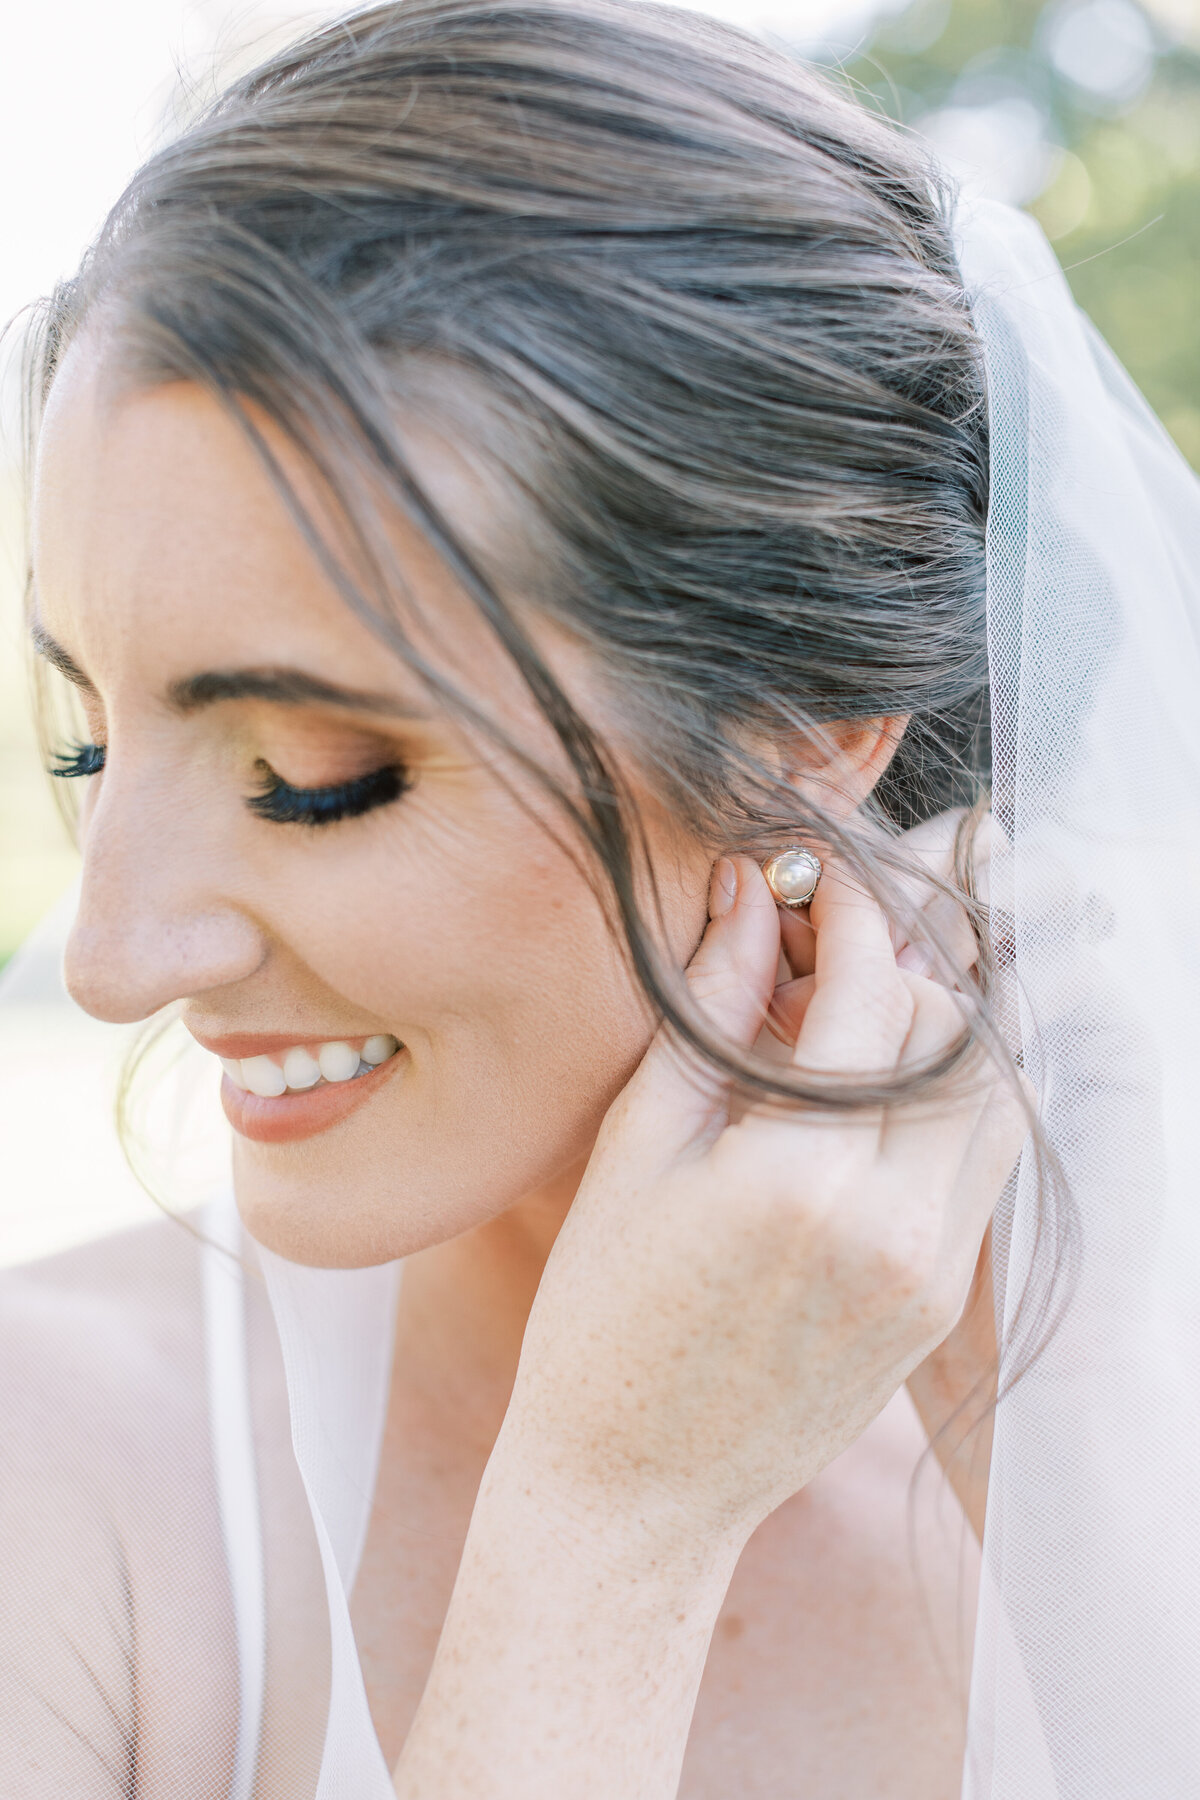 A joyful bride puts her earring in.